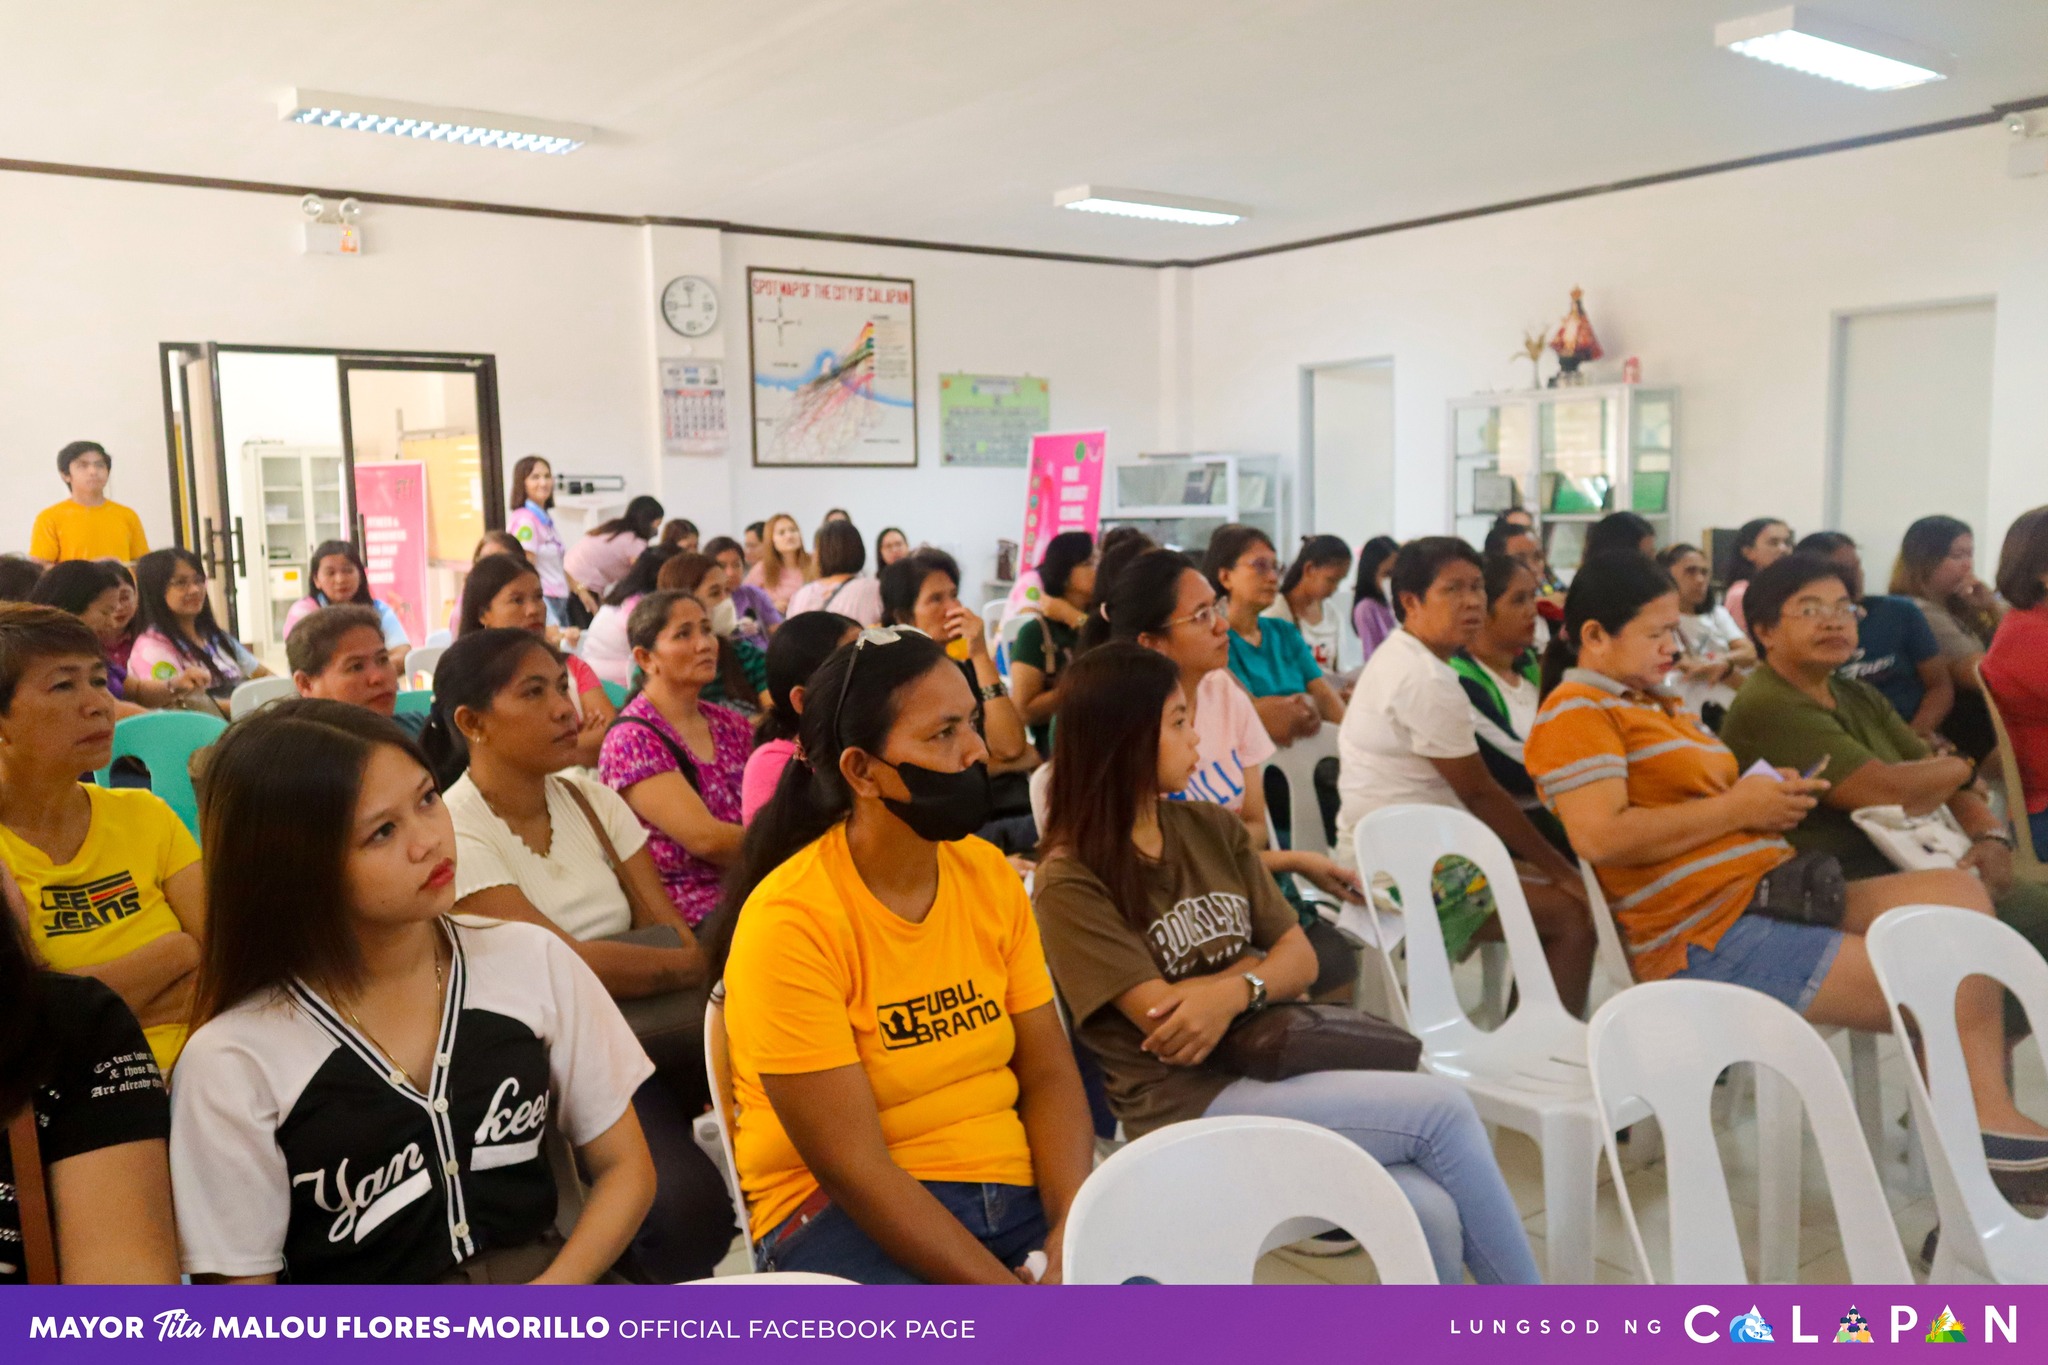 Lectures and lay forum kaugnay sa breast cancer awareness program, isinagawa sa lungsod ng Calapan